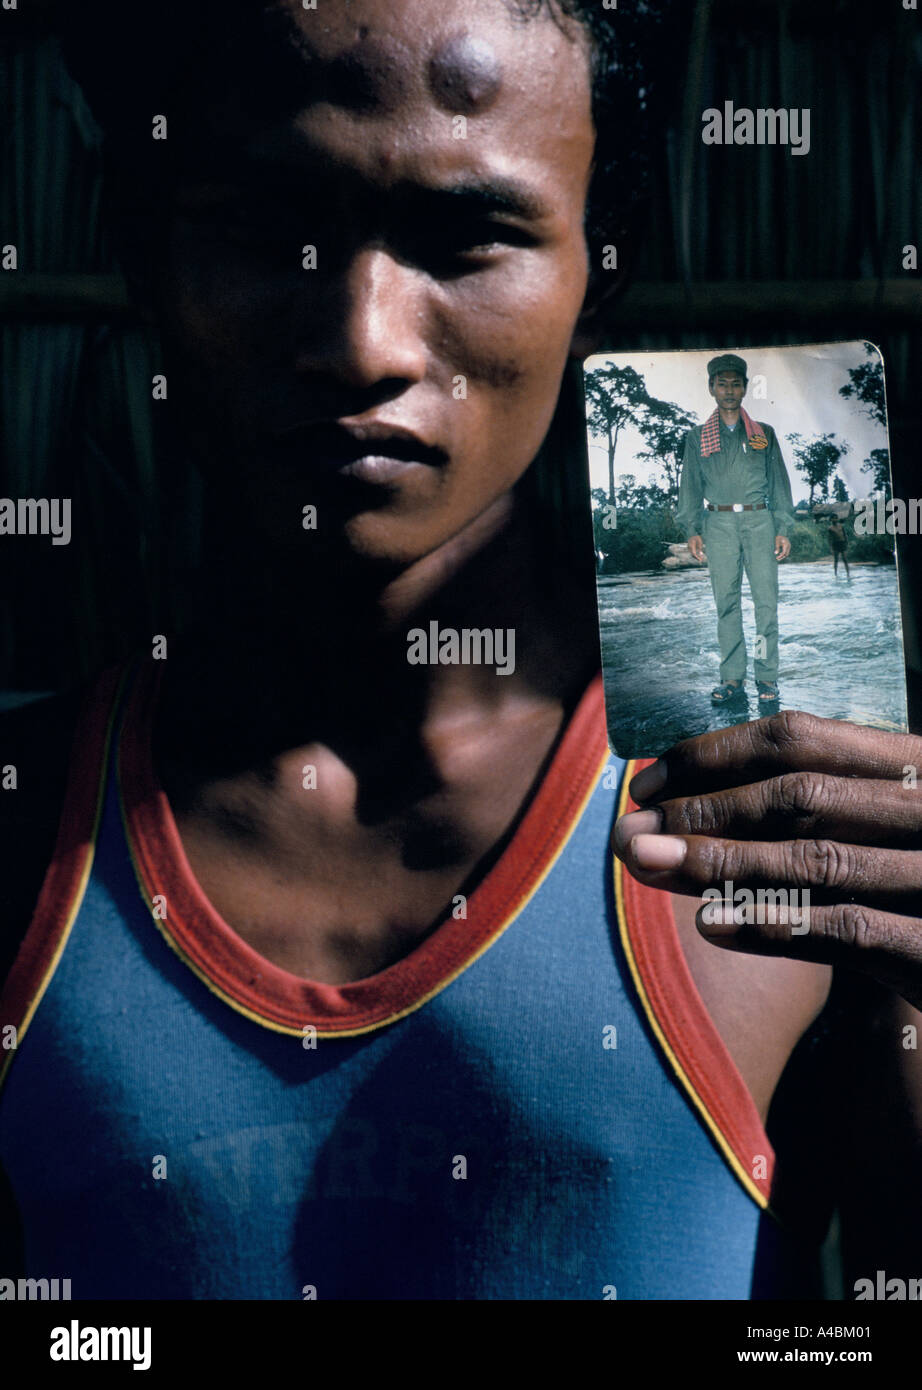 Ehemaliger Soldat der Roten Khmer, entführt von den Roten Khmer, dann floh, hält ein Foto von sich in KR-uniform Stockfoto